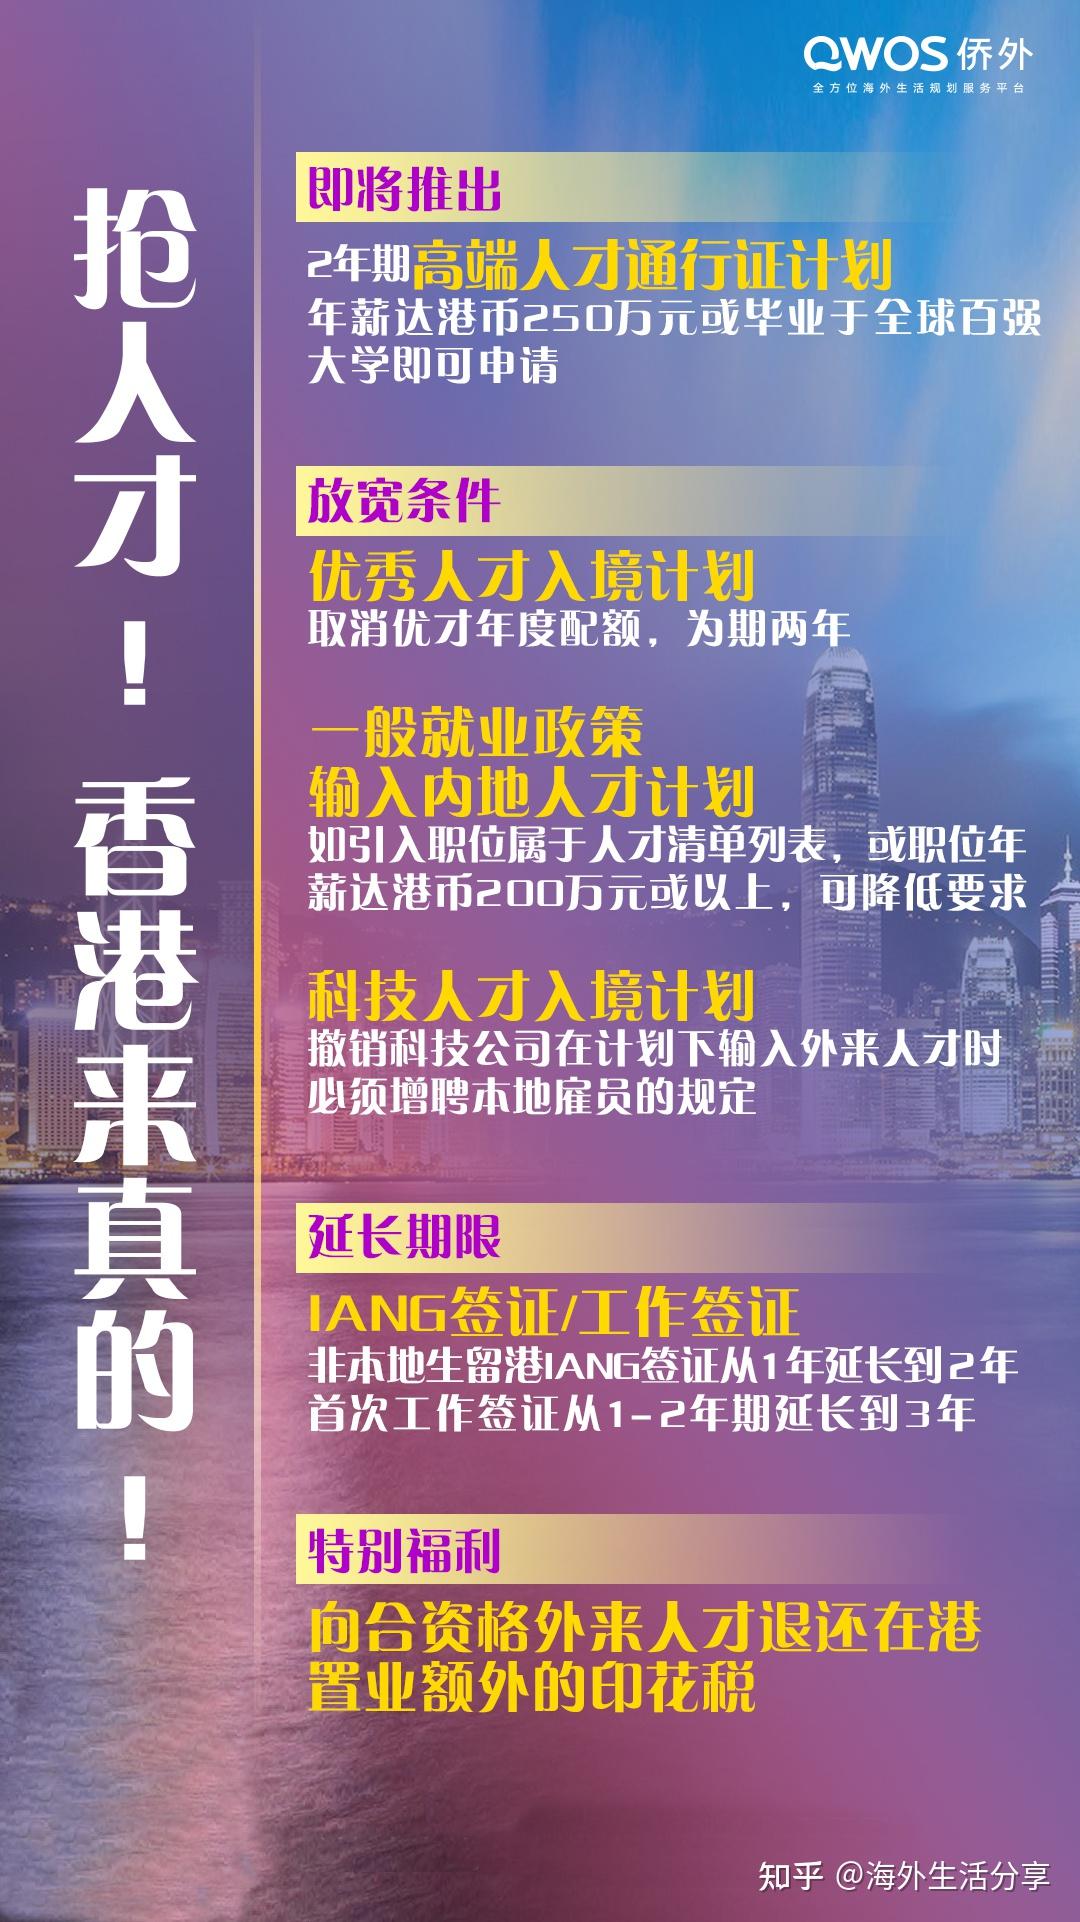 中信银行台州温岭支行开展防盗抢应急演习-台州频道